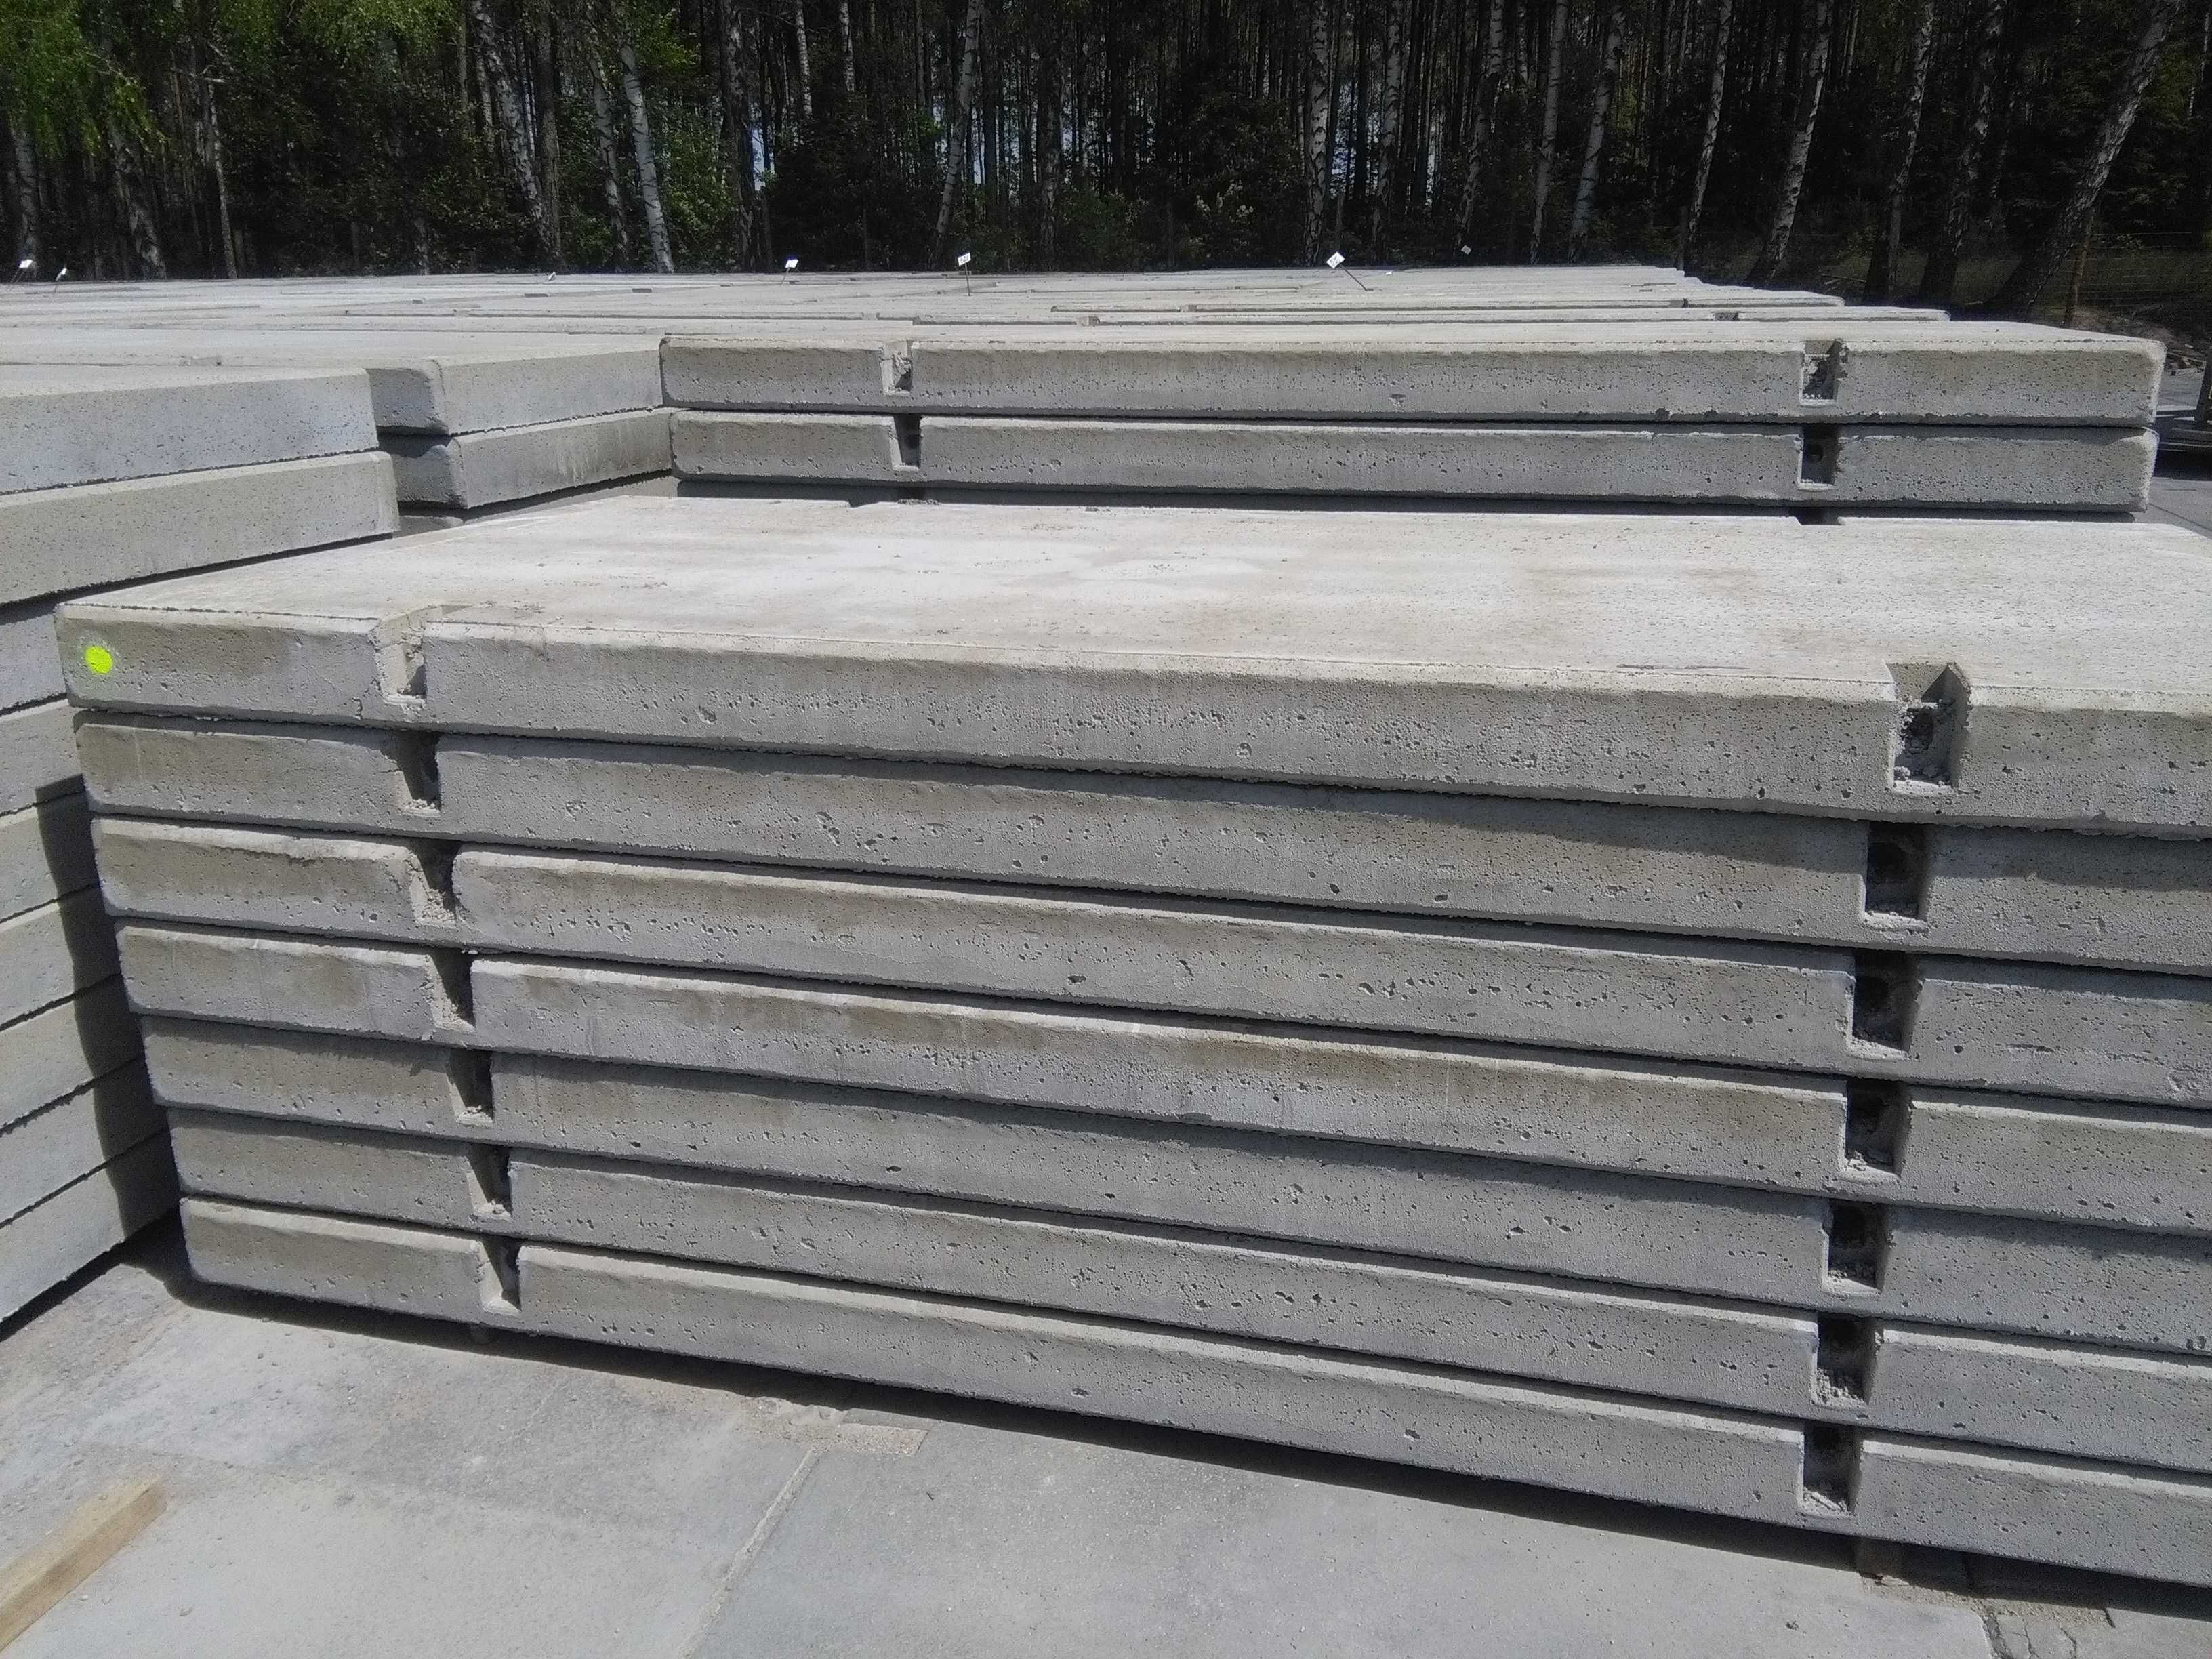 Płyty drogowe betonowe GRUBE MON NOWE 300x150x15/18/20 cm MOCNE